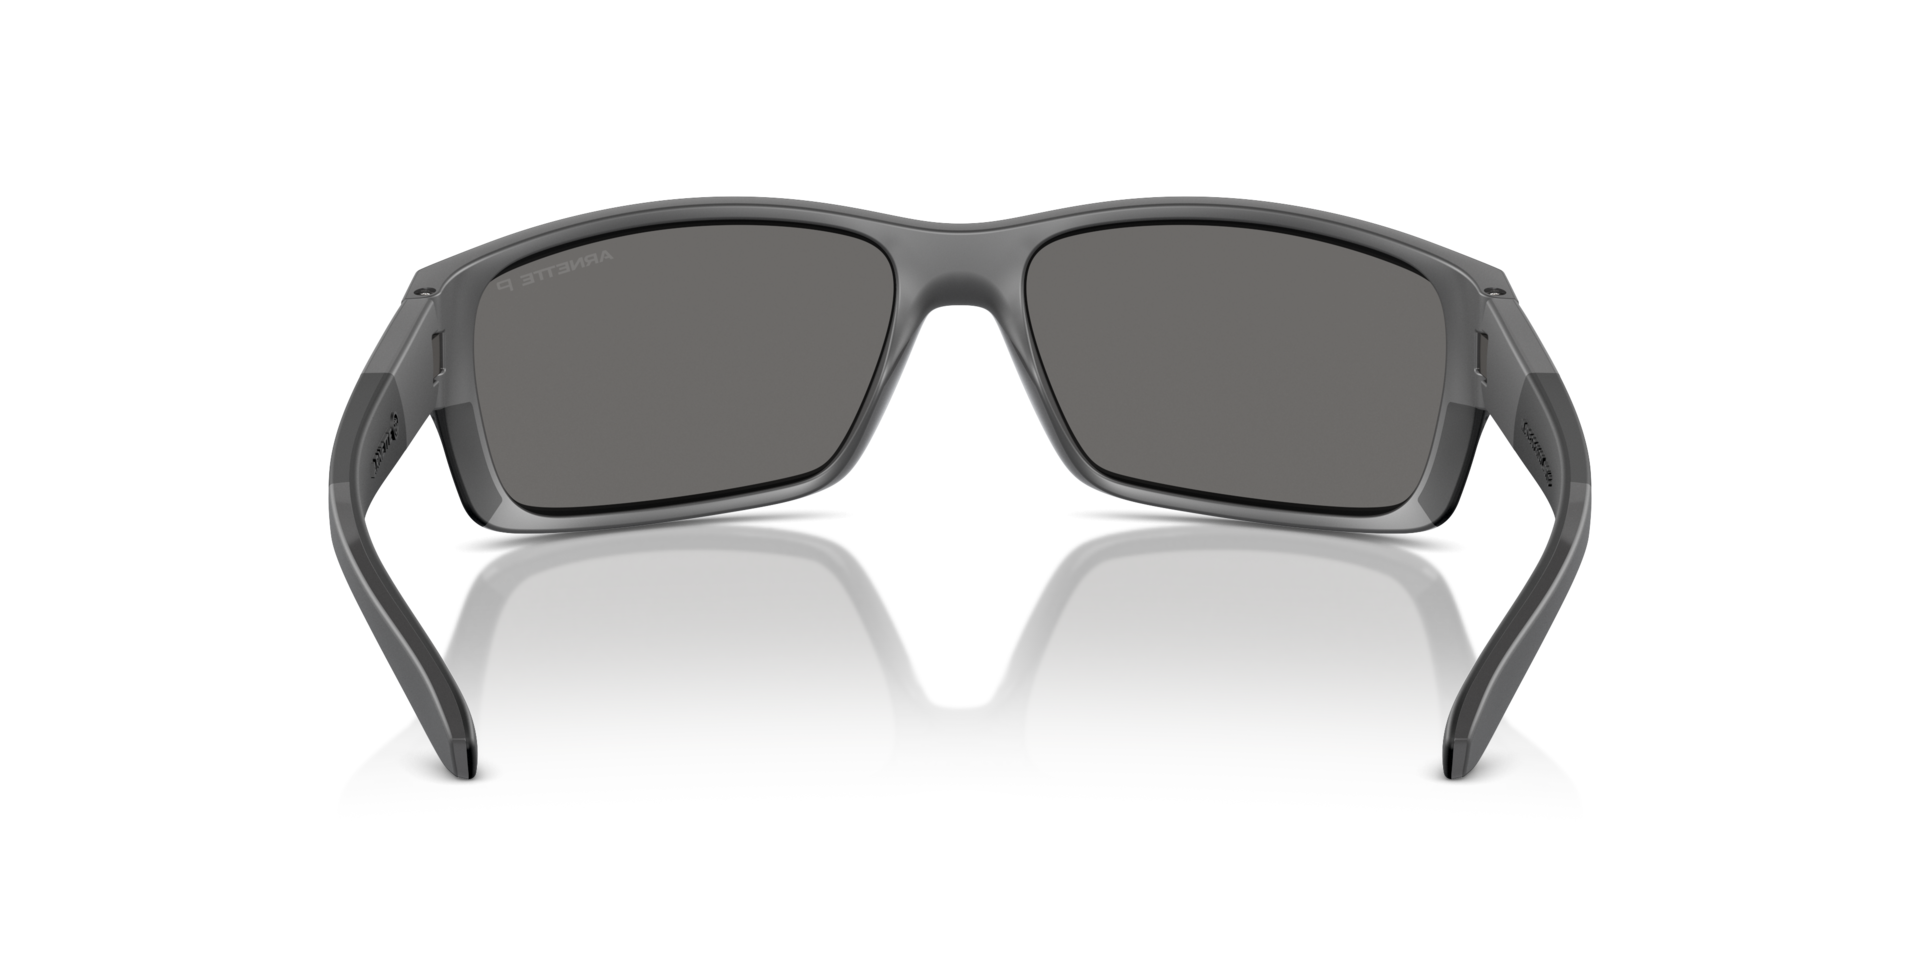 Das Bild zeigt die Sonnenbrille AN4336 2870Z3 von der Marke Arnette in schwarz